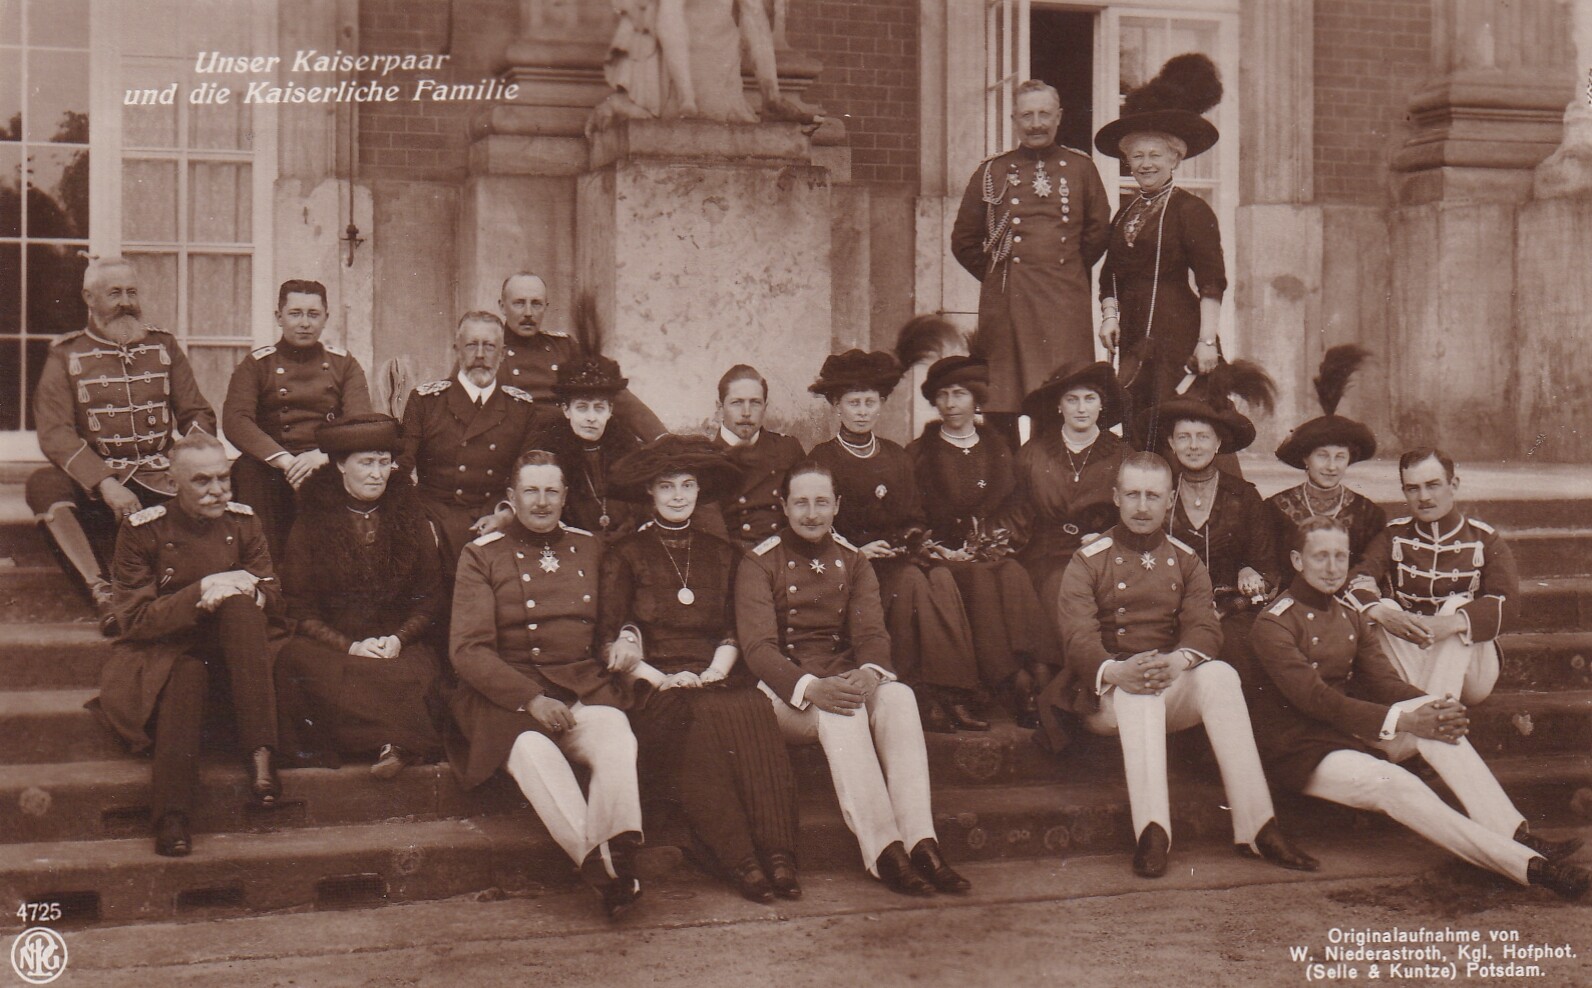 Bildpostkarte mit Foto der Familie Kaiser Wilhelms II. (1859-1941) vor dem Neuen Palais in Potsdam, 15. Juni 1913 (Schloß Wernigerode GmbH RR-F)